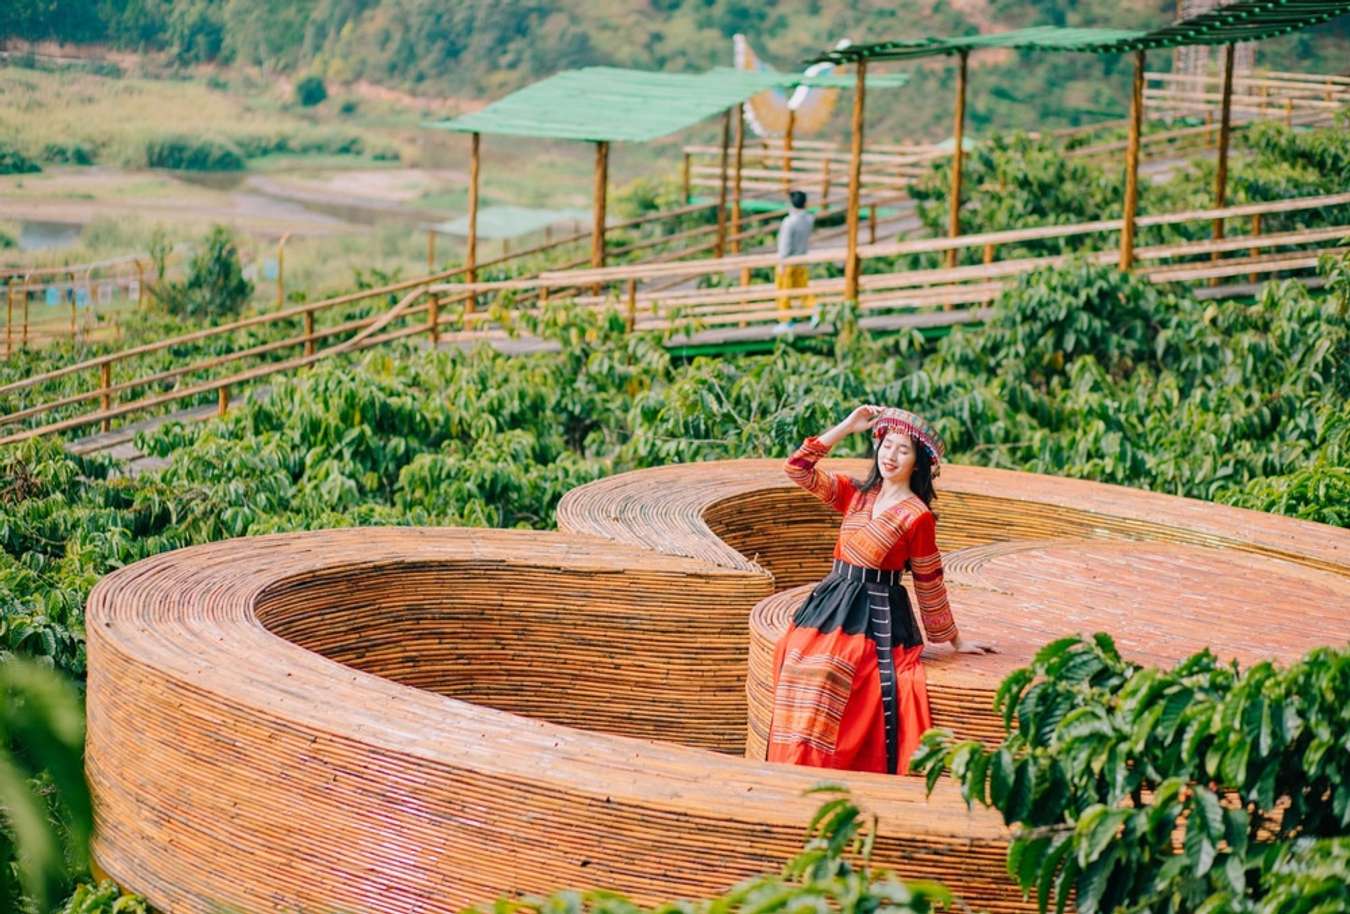 Mê Linh Coffee Garden Đà Lạt: địa điểm uống cafe ngắm view tuyệt đẹp